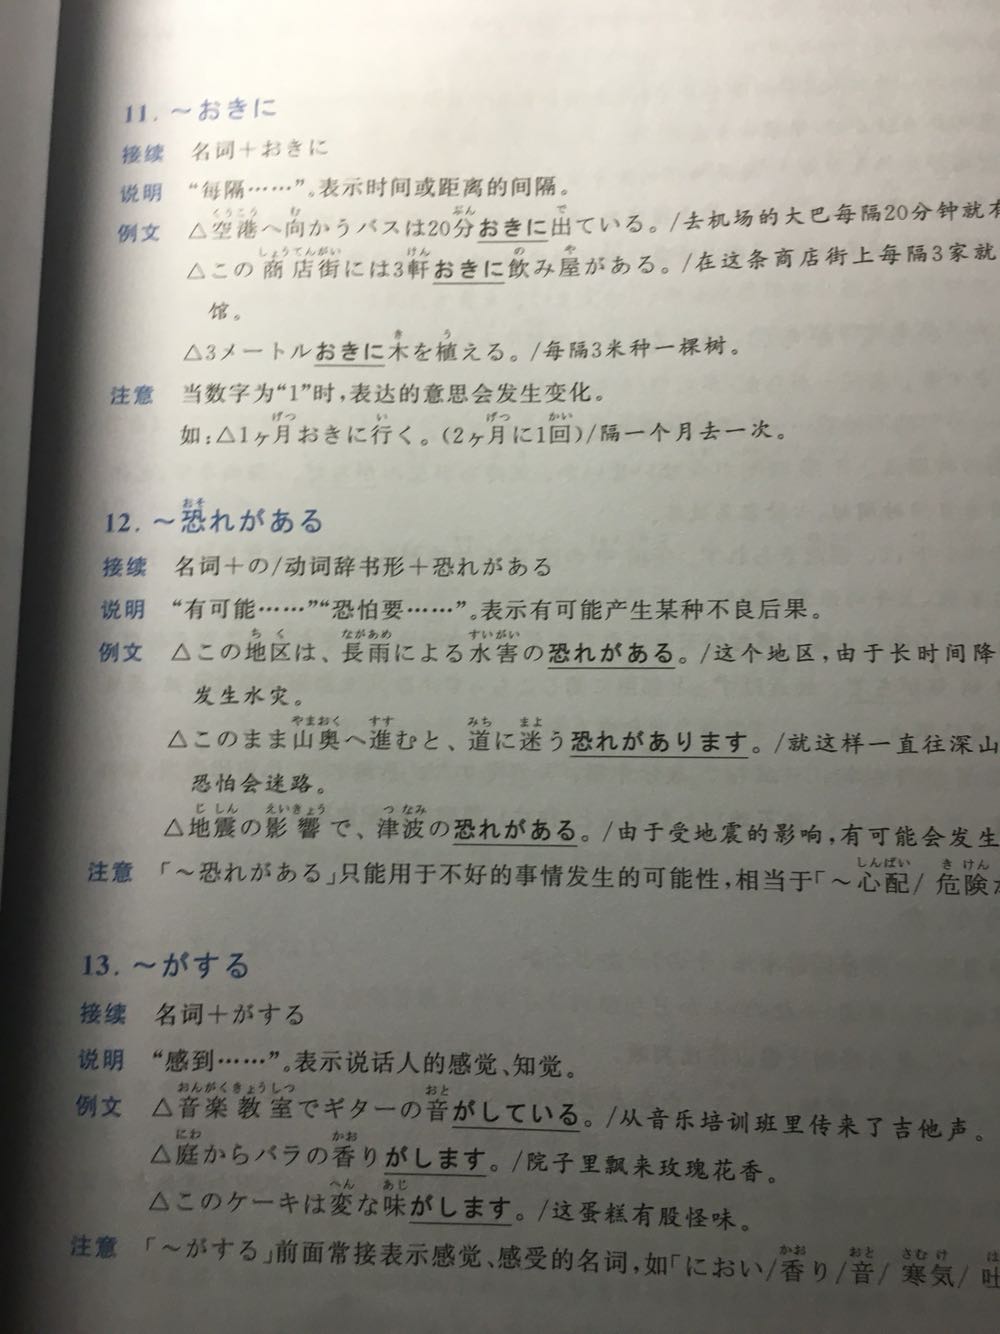 每一个讲的还挺详细的 日语和英语学习方式不太一样 靠词的变化来改变目的 书有点受压 不过无所谓了